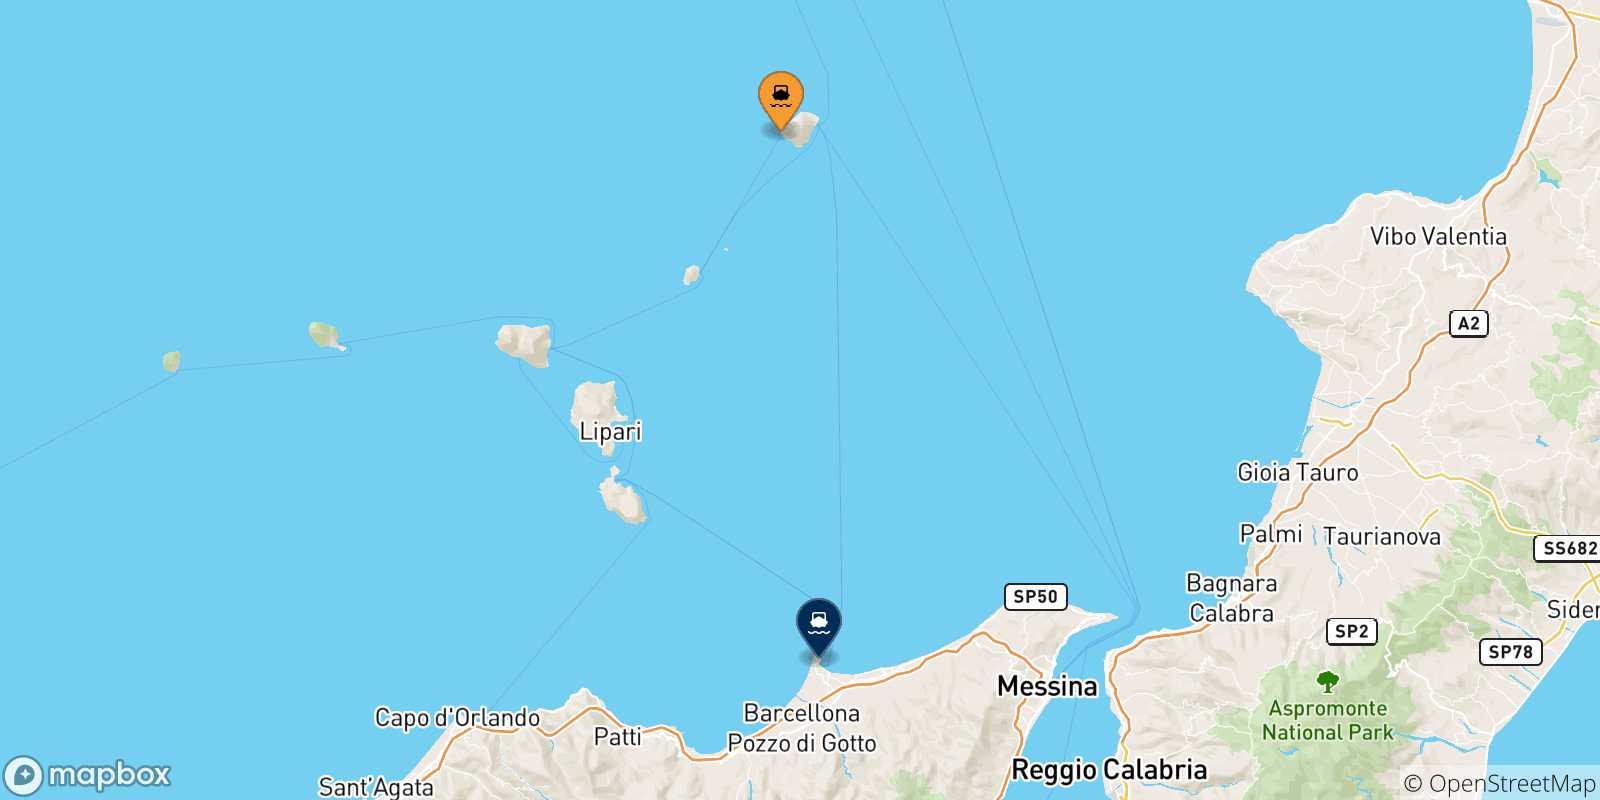 Mappa delle possibili rotte tra Ginostra (Stromboli) e la Sicilia